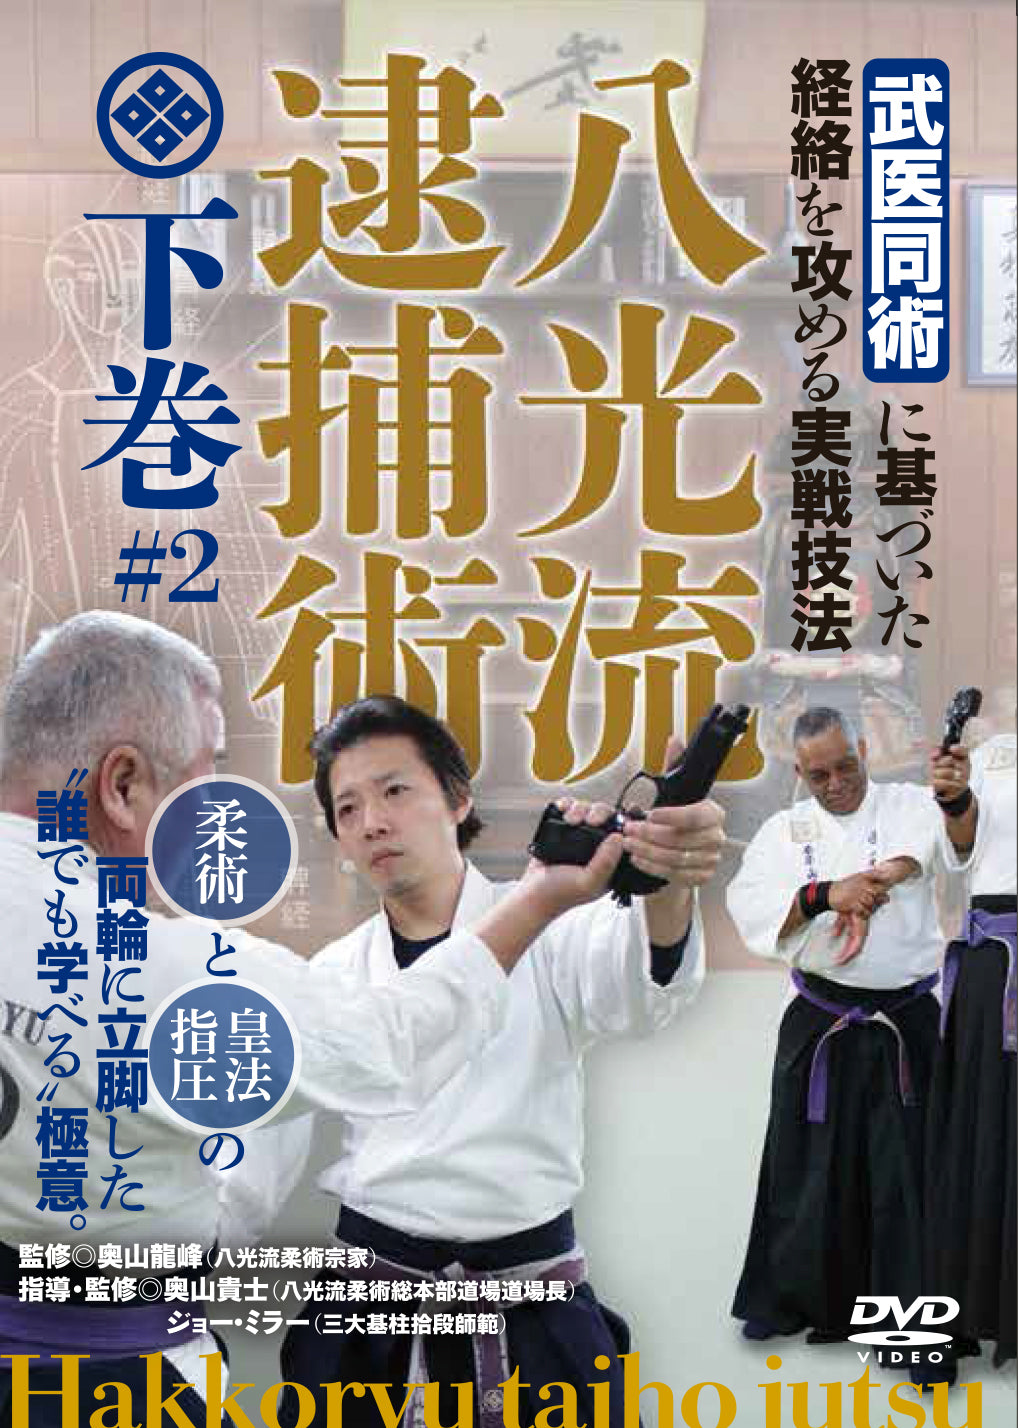 Hakko Ryu Taiho Jutsu Vol 2 DVD - Budovideos Inc